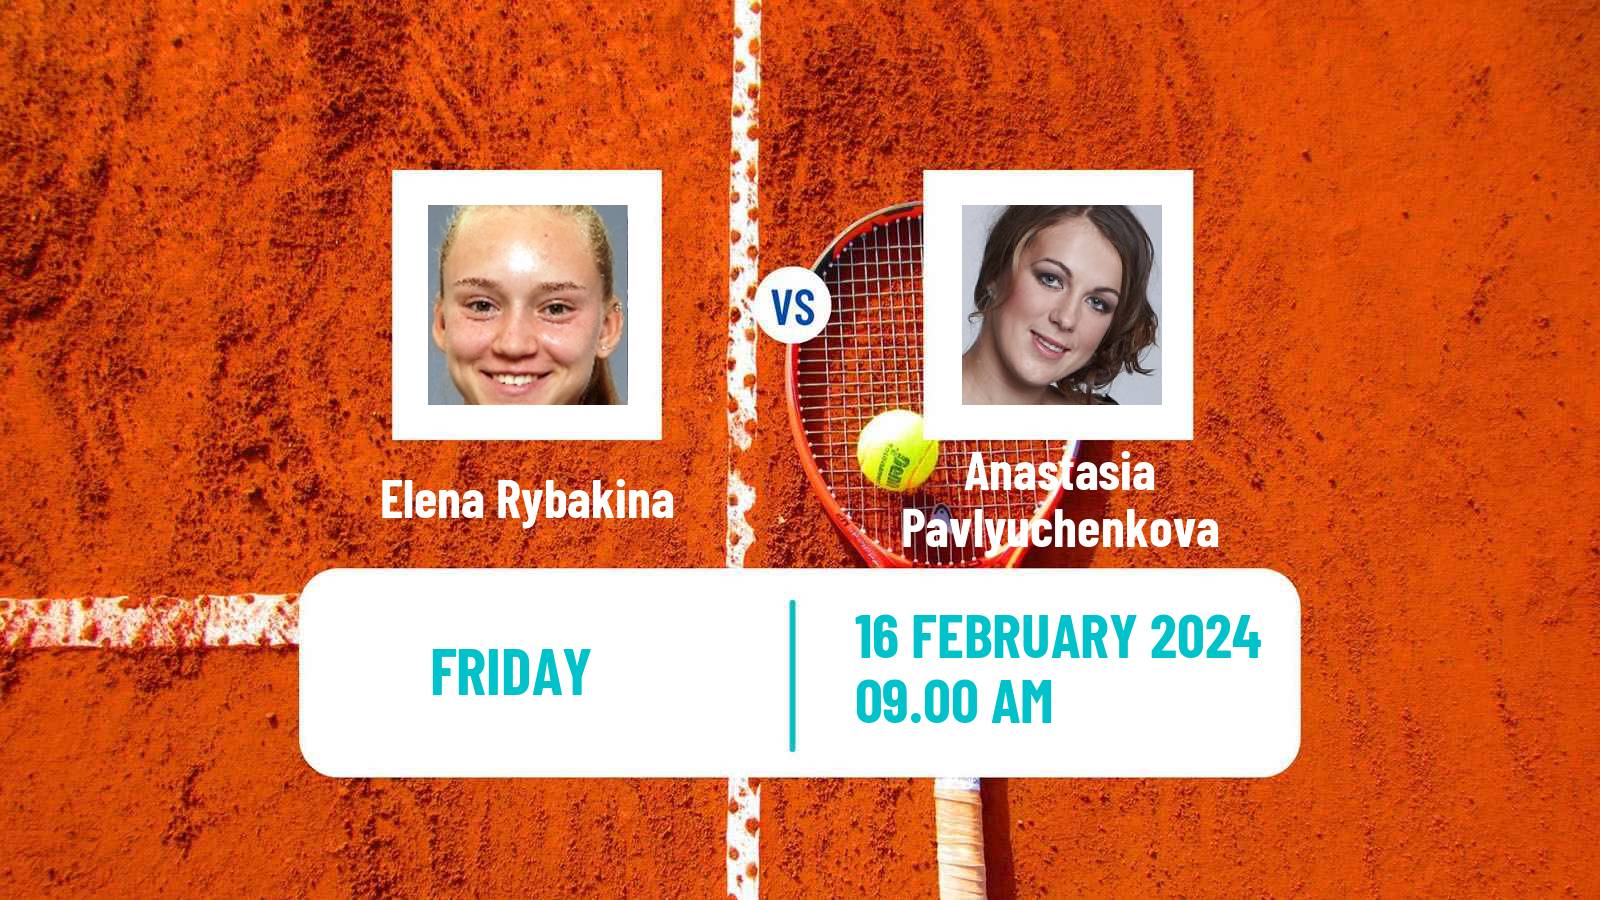 Tennis WTA Doha Elena Rybakina - Anastasia Pavlyuchenkova